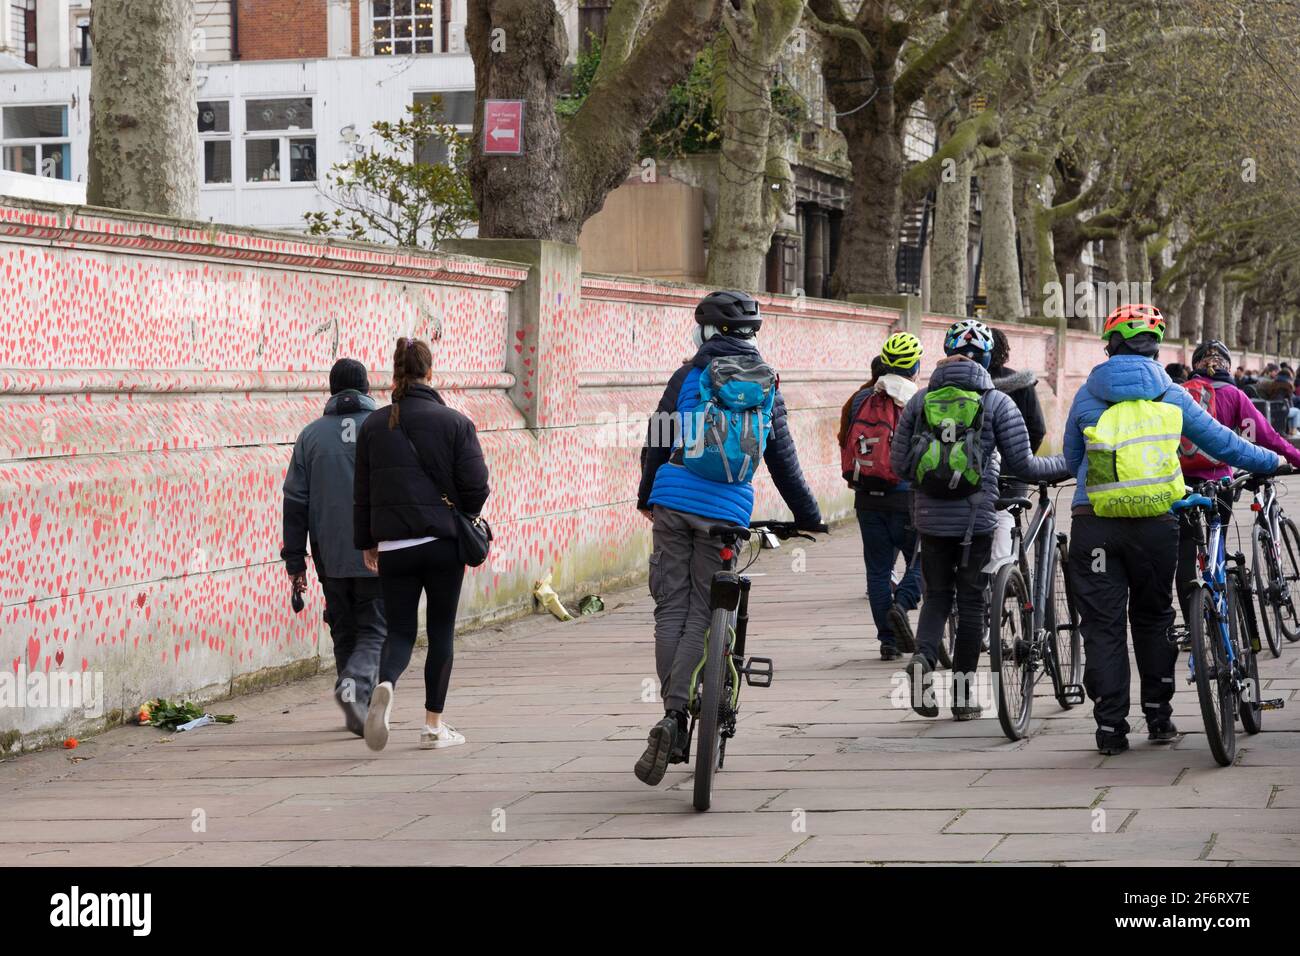 Gruppi di ciclisti e residenti locali camminano e visitano il muro commemorativo del covid nazionale, la riva sud di Londra, sull'argine, Inghilterra Foto Stock